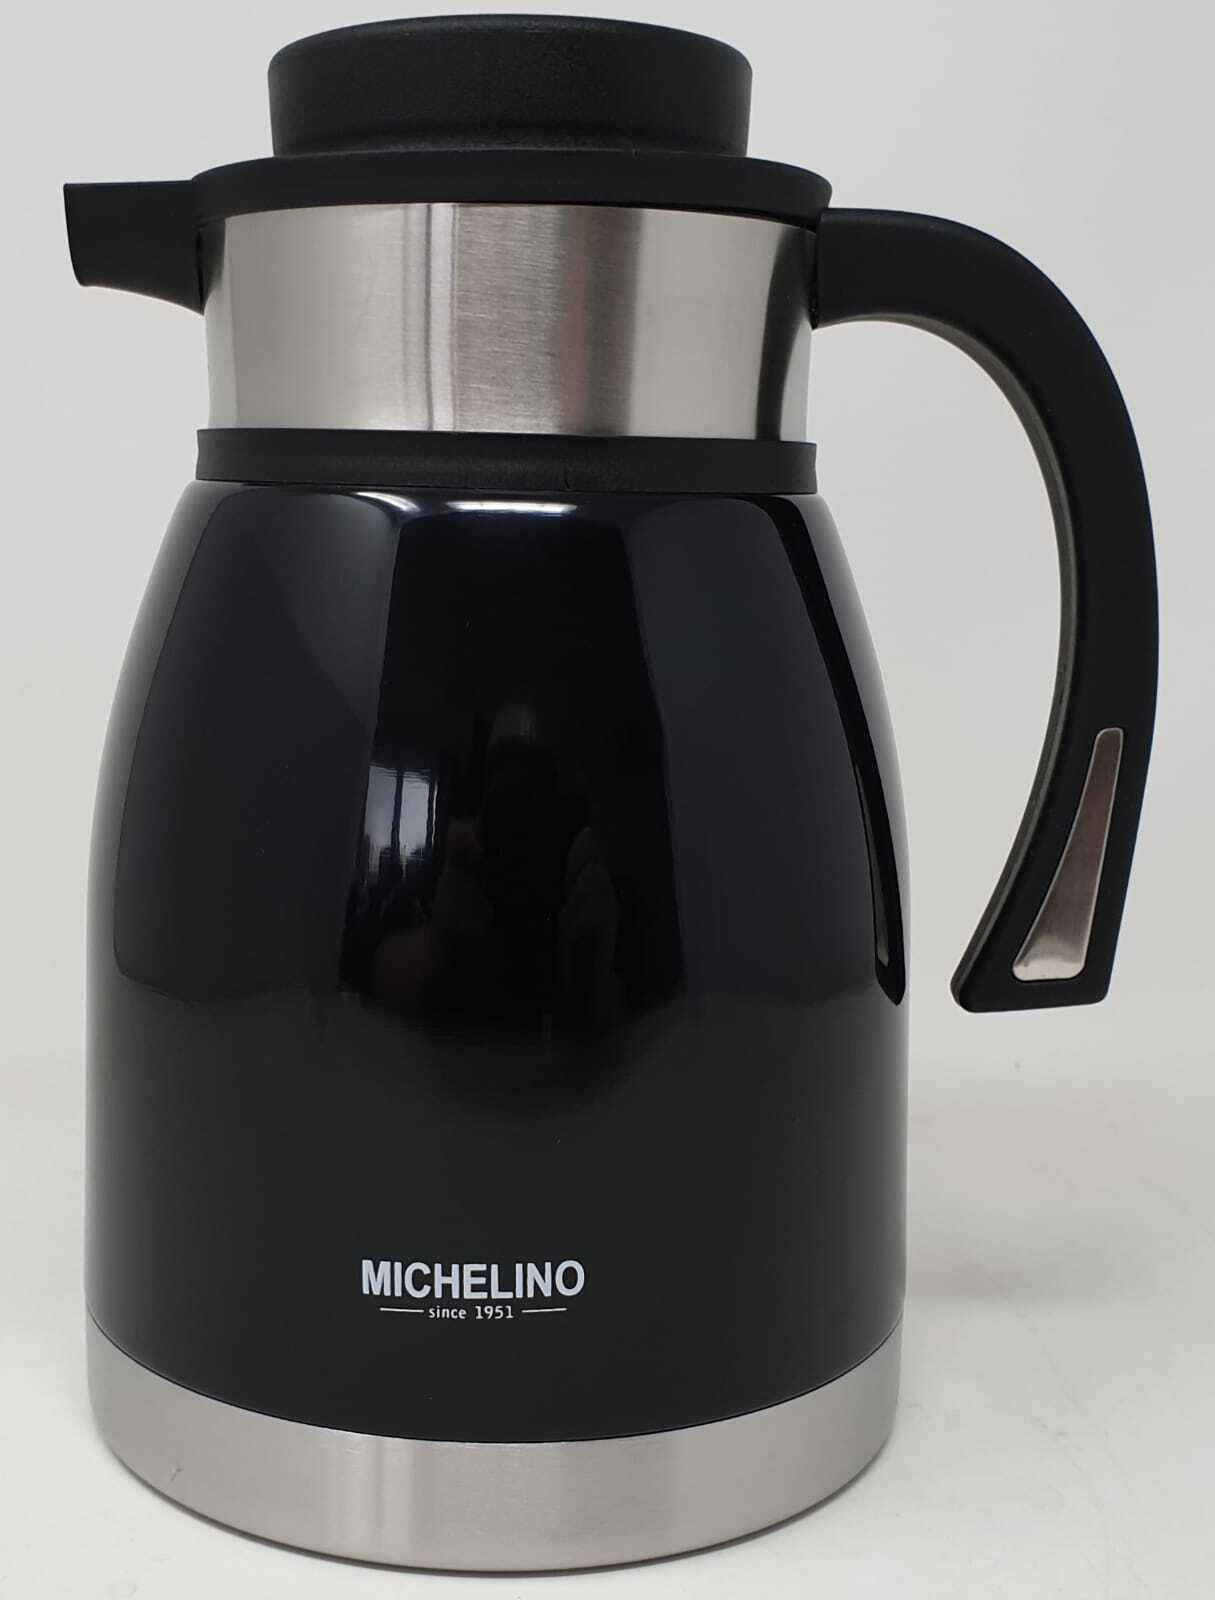 Michelino Edelstahl Isolierkanne doppelwandig - Vakuum Kaffeekanne - Thermoskanne - 1,5Liter - ideal für Tee oder als Kaffeekann